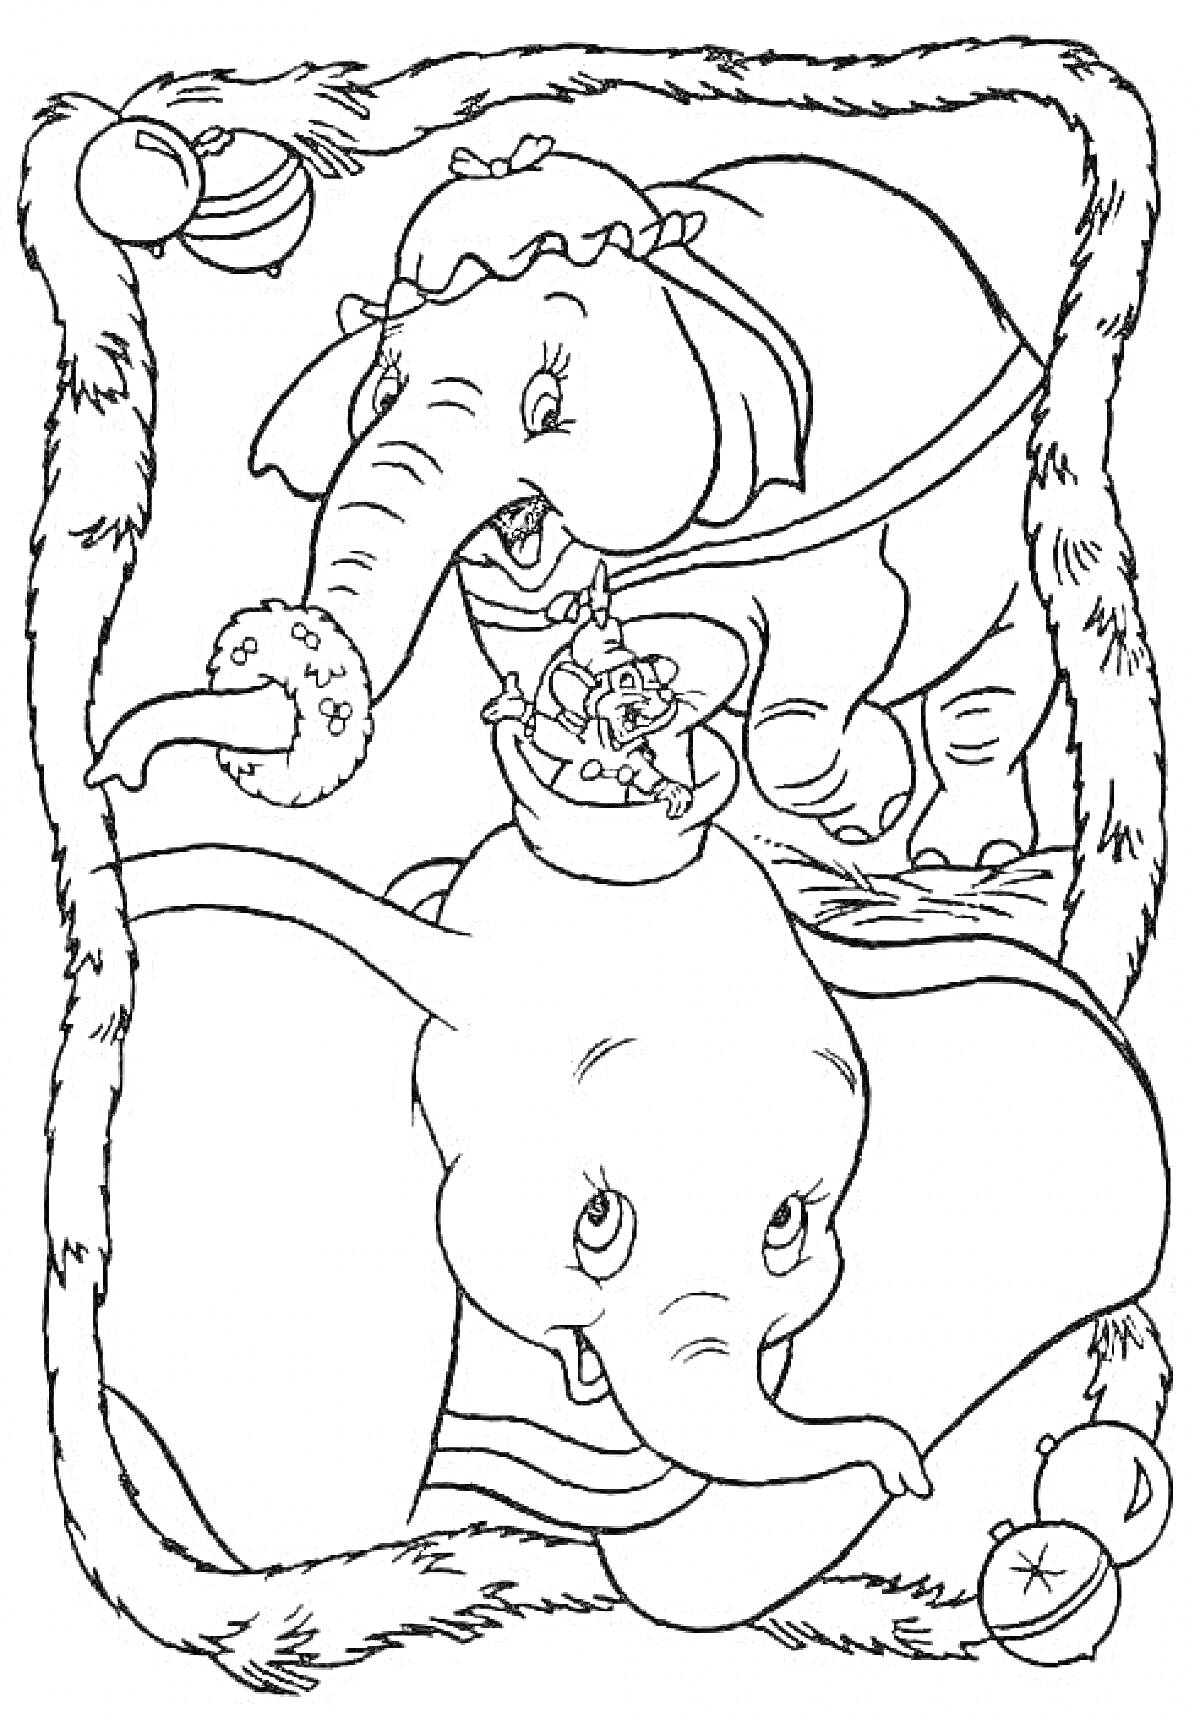 Слоненок Дамбо и его мама с рождественскими украшениями и игрушками